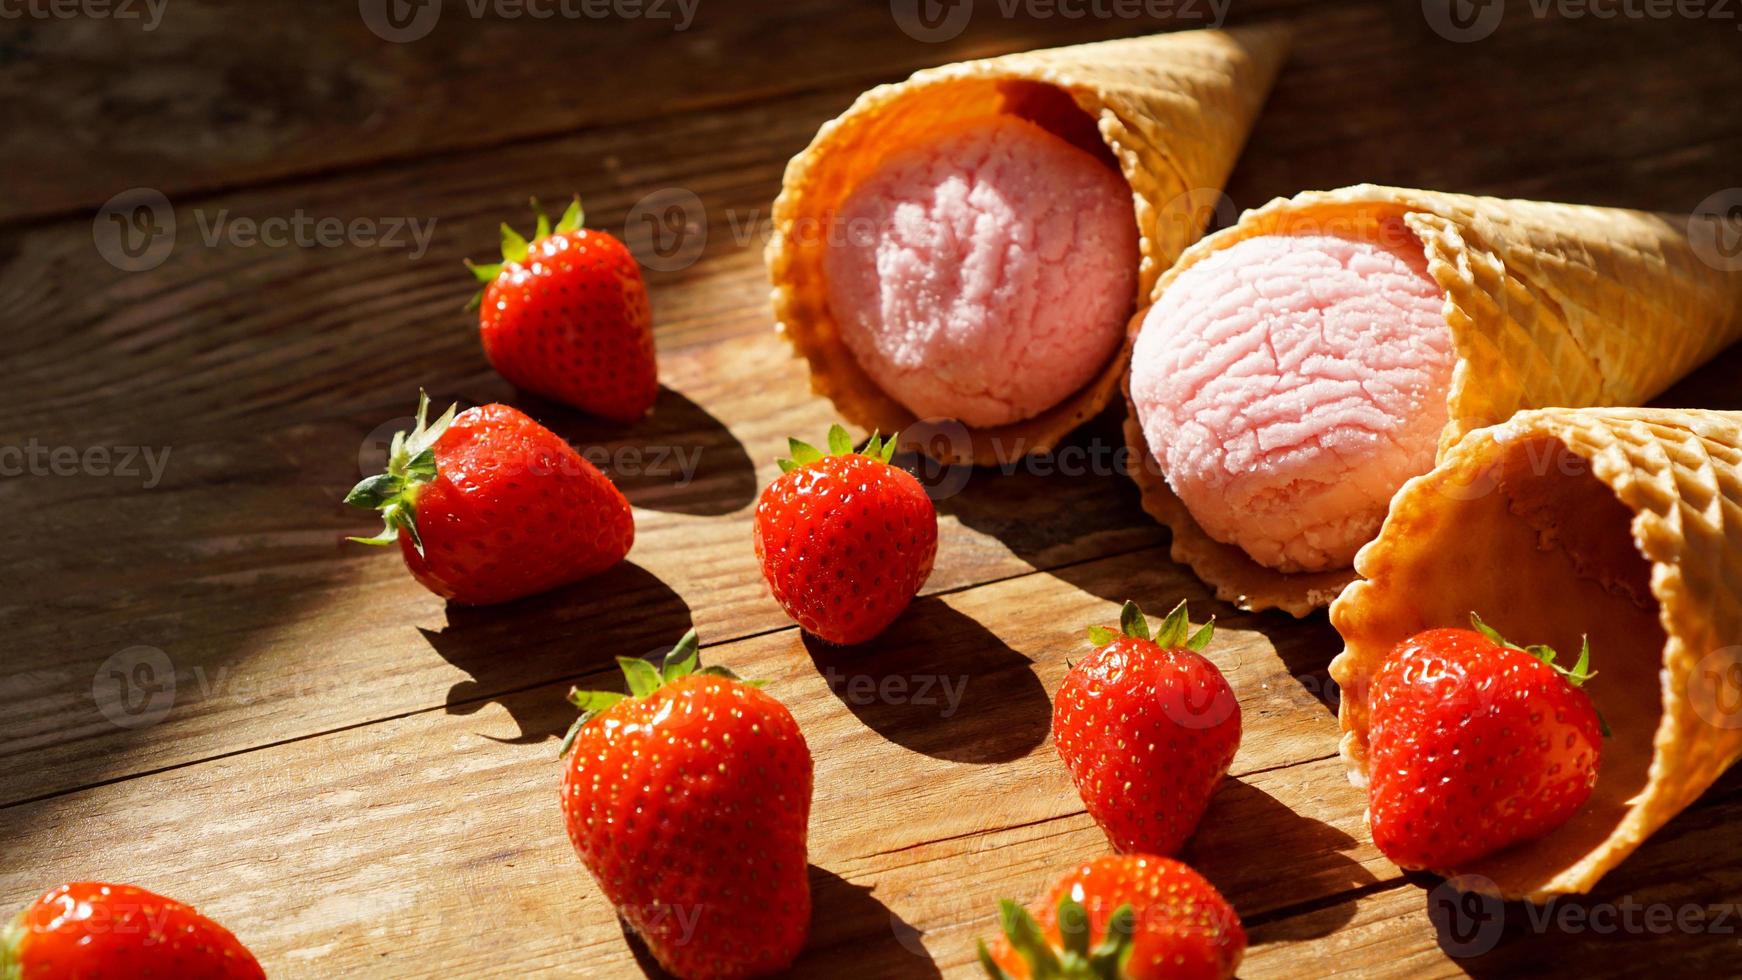 sorvete de morango em uma casquinha de waffle. frutas vermelhas e bolas de sorvete foto